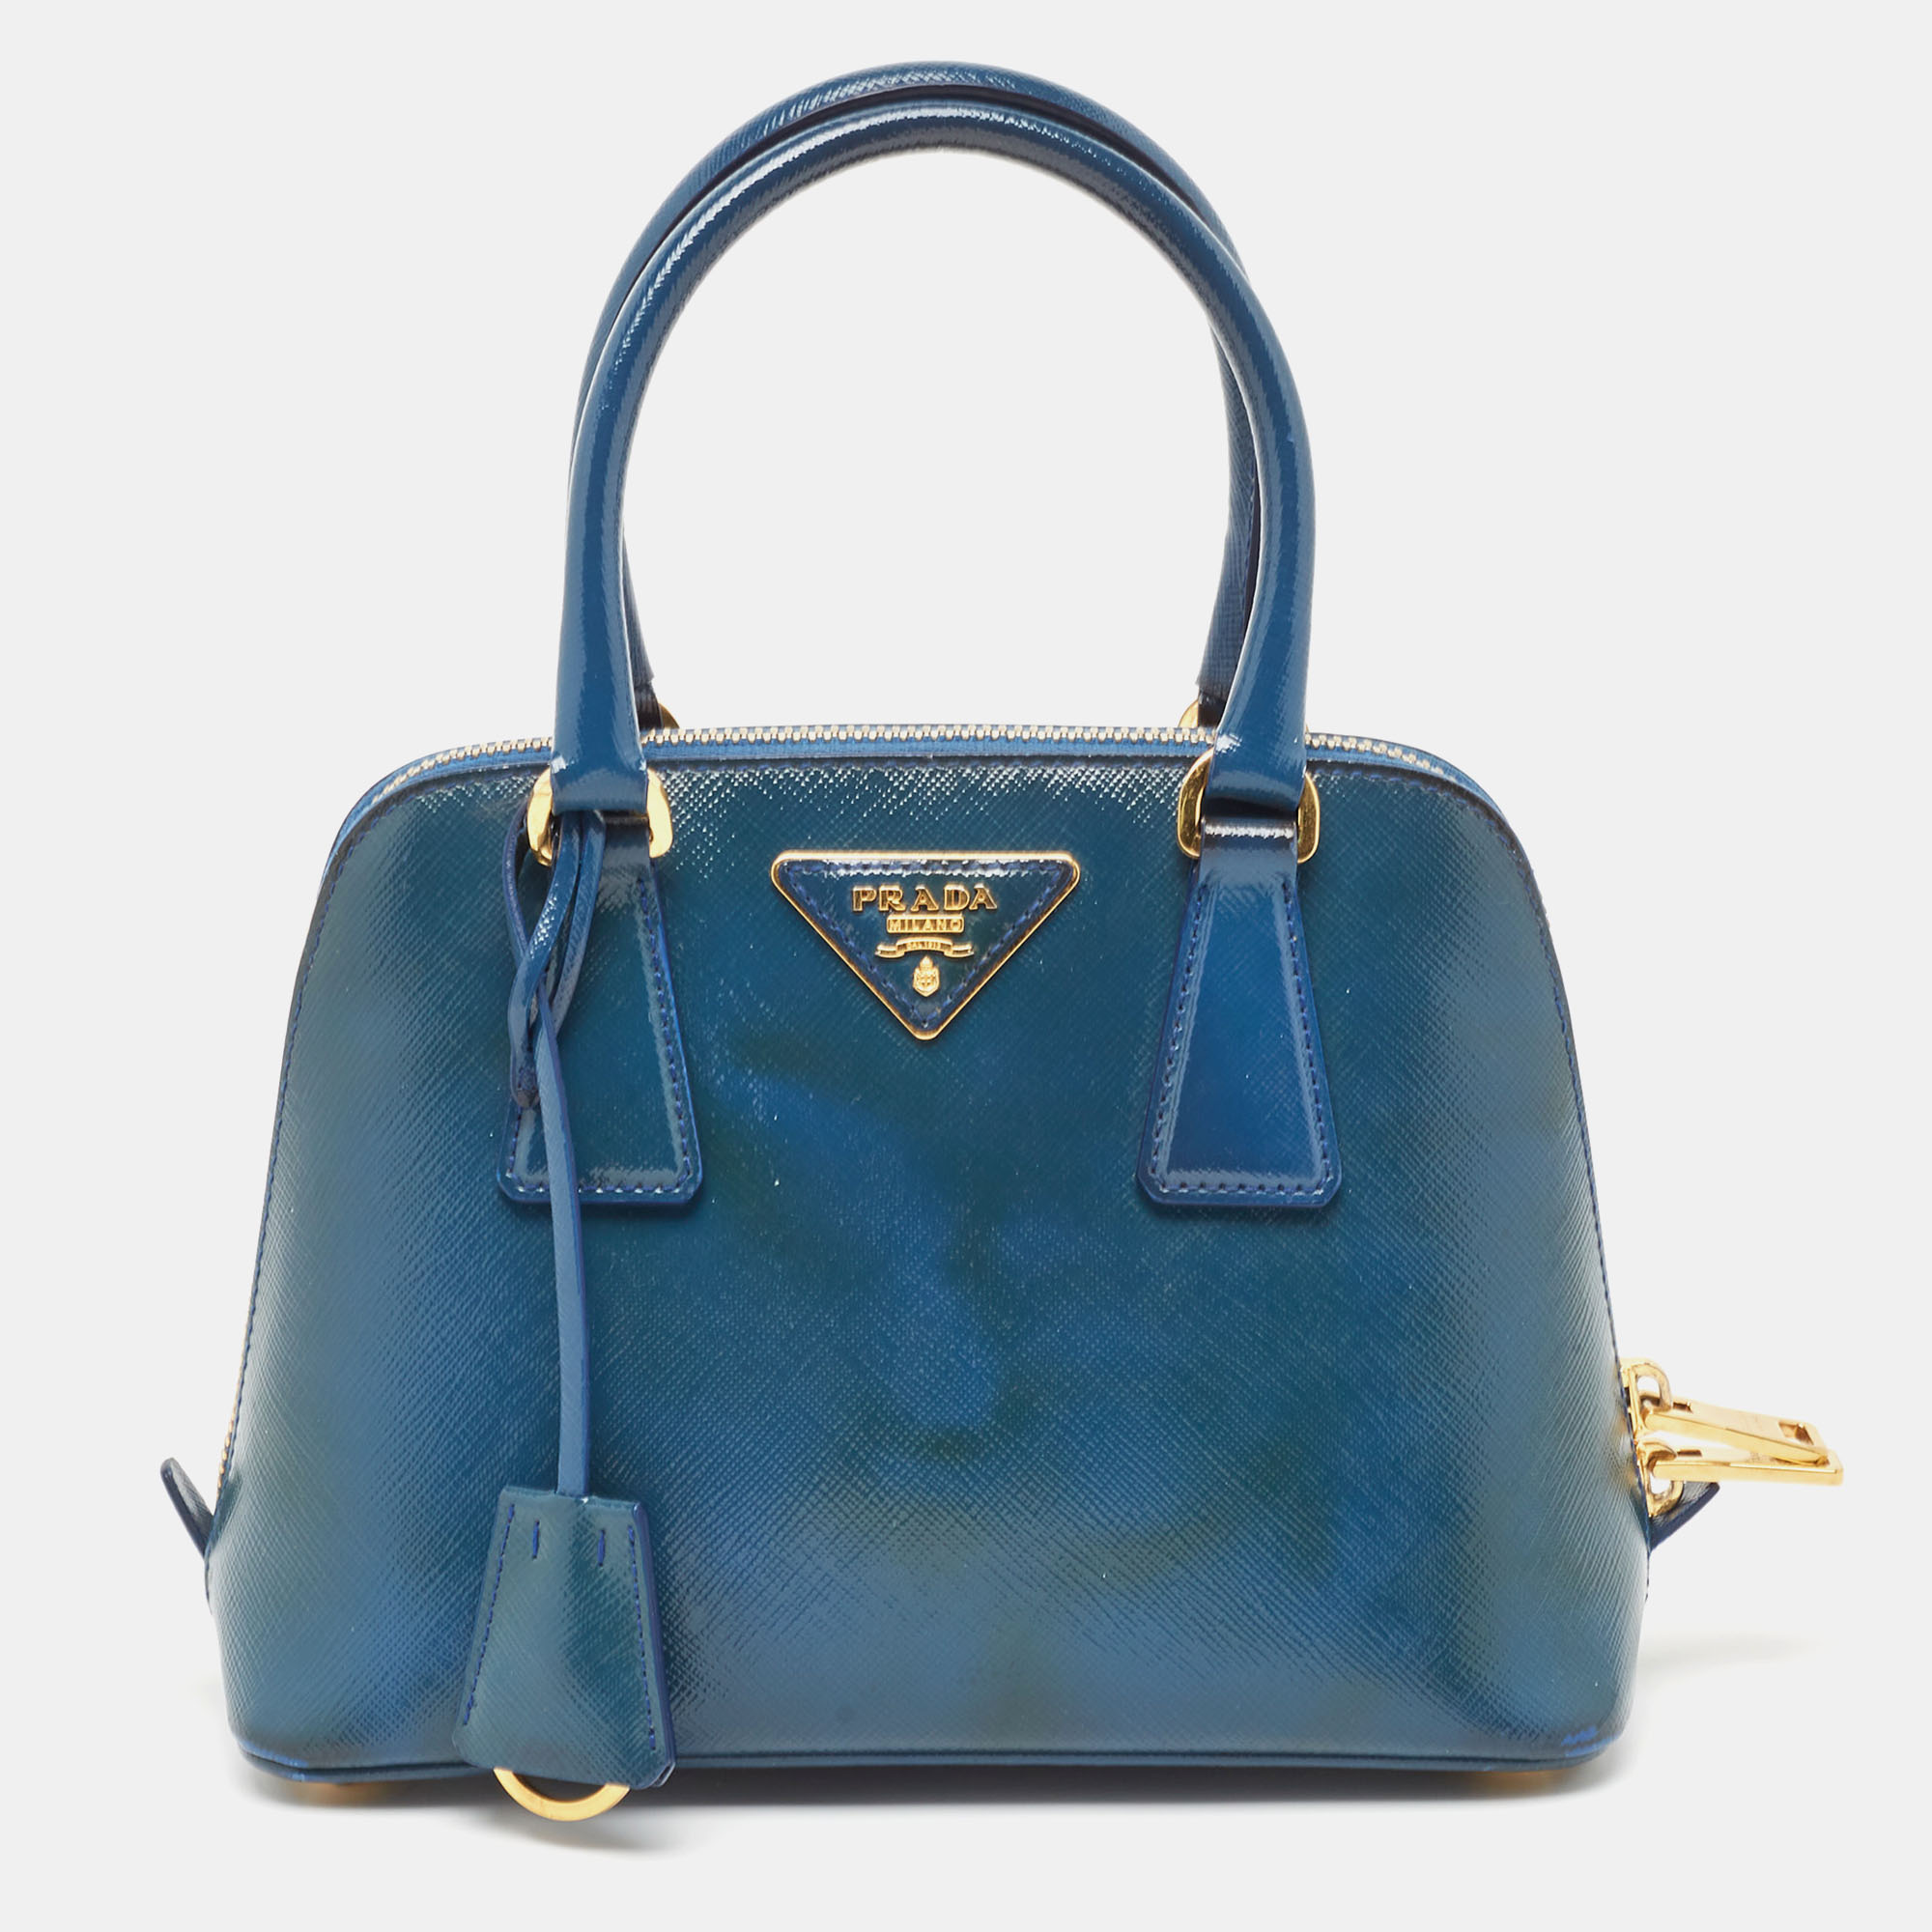 Pre-owned Prada Blue Saffiano Patent Leather Small Promenade Satchel